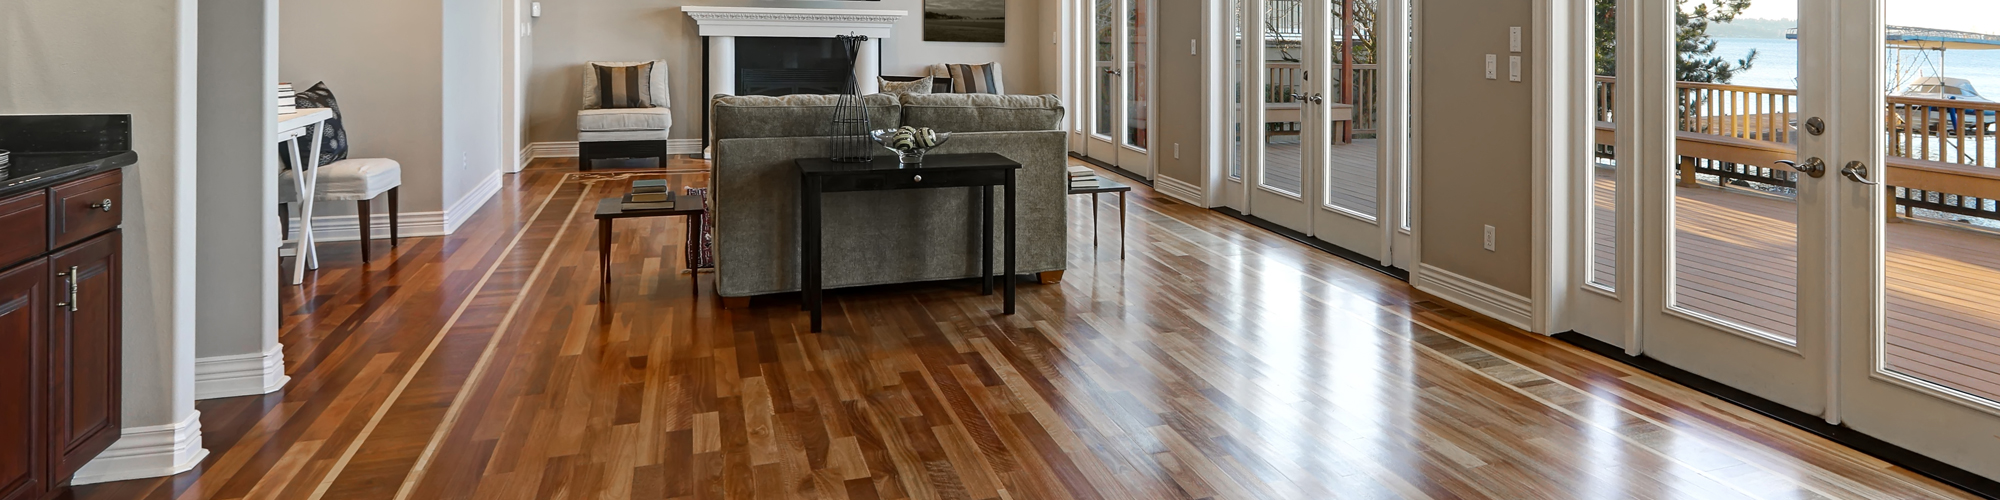 Hardwood Floors Custom Tile, Hardwood Flooring Cornelius Nc